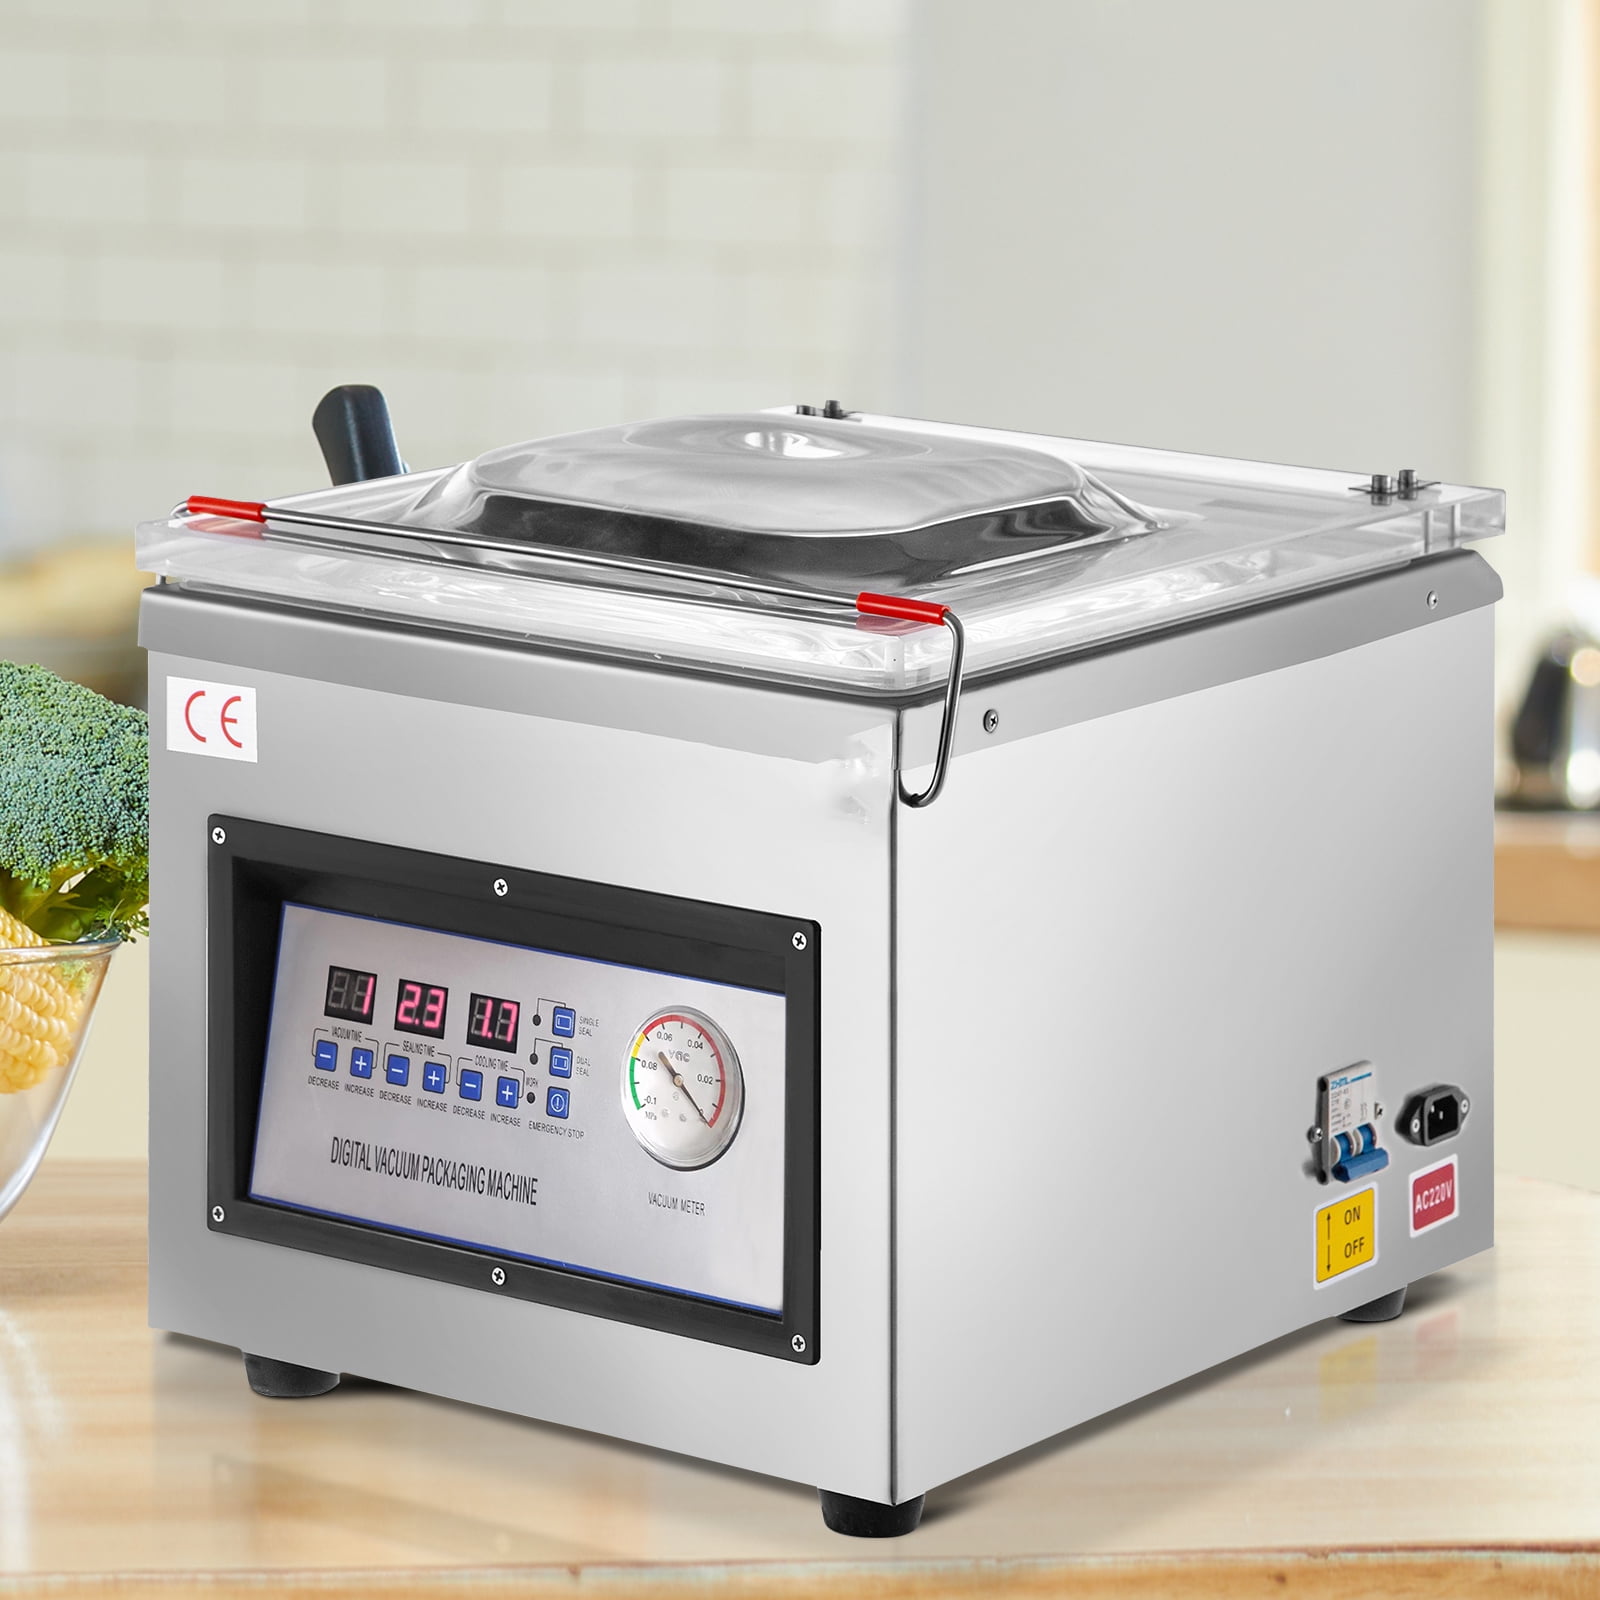 VEVOR Food Vacuum Sealer Machine 120 Watt Chamber Packaging Sealer 110-Volt for Food Saver Home Commercial Kitchen